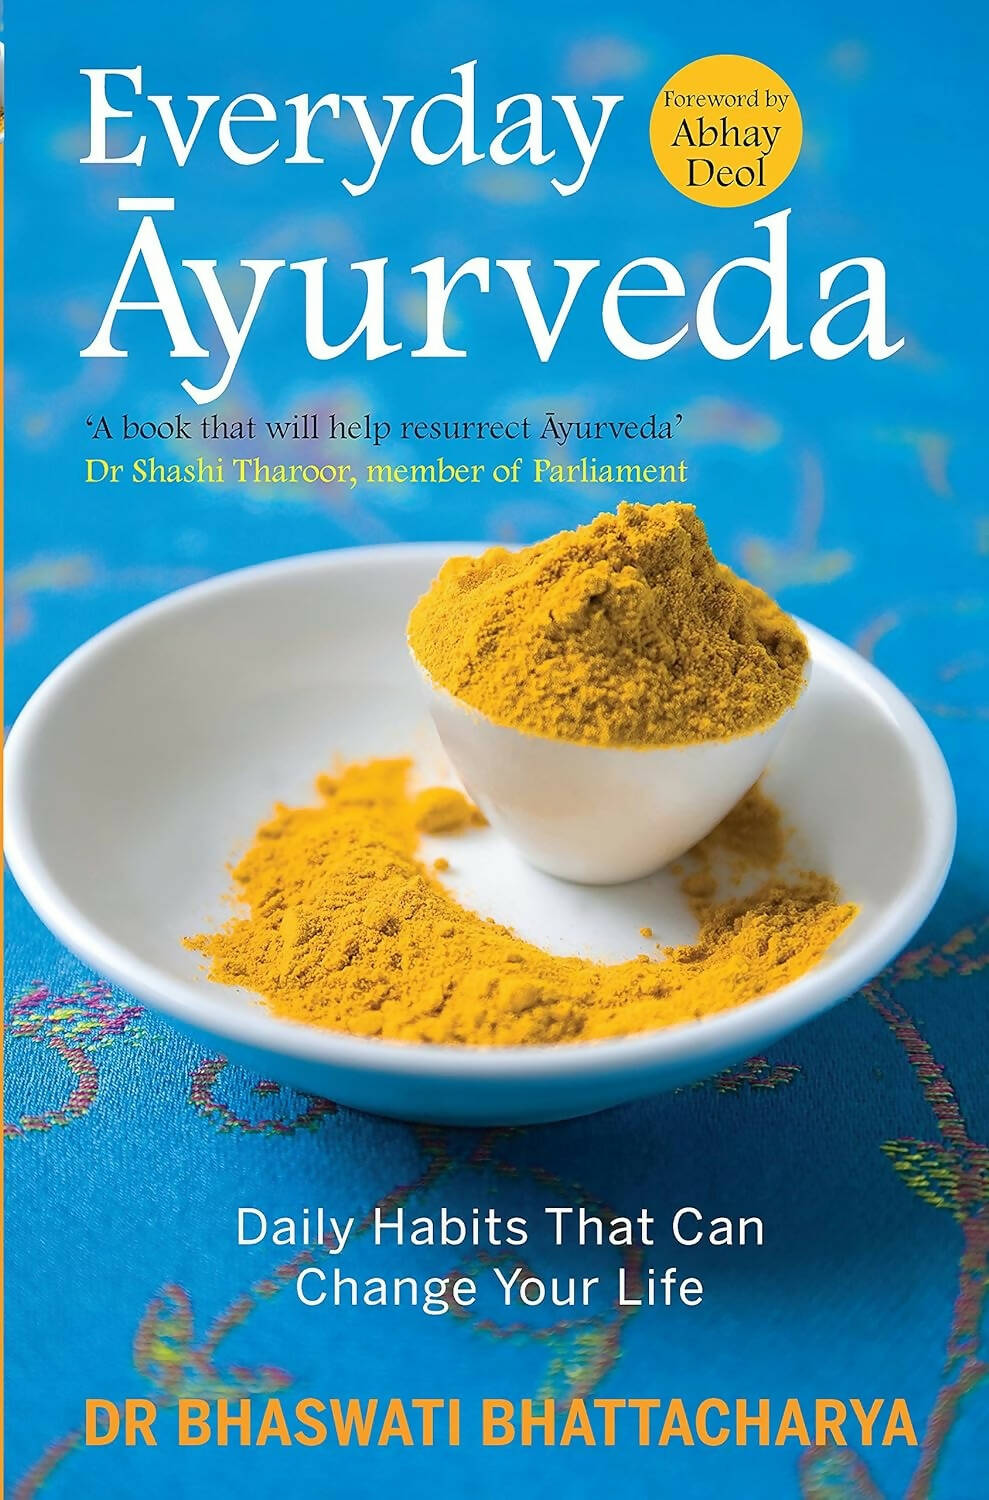 Everyday Ayurveda by Dr Bhaswati Bhattacharya